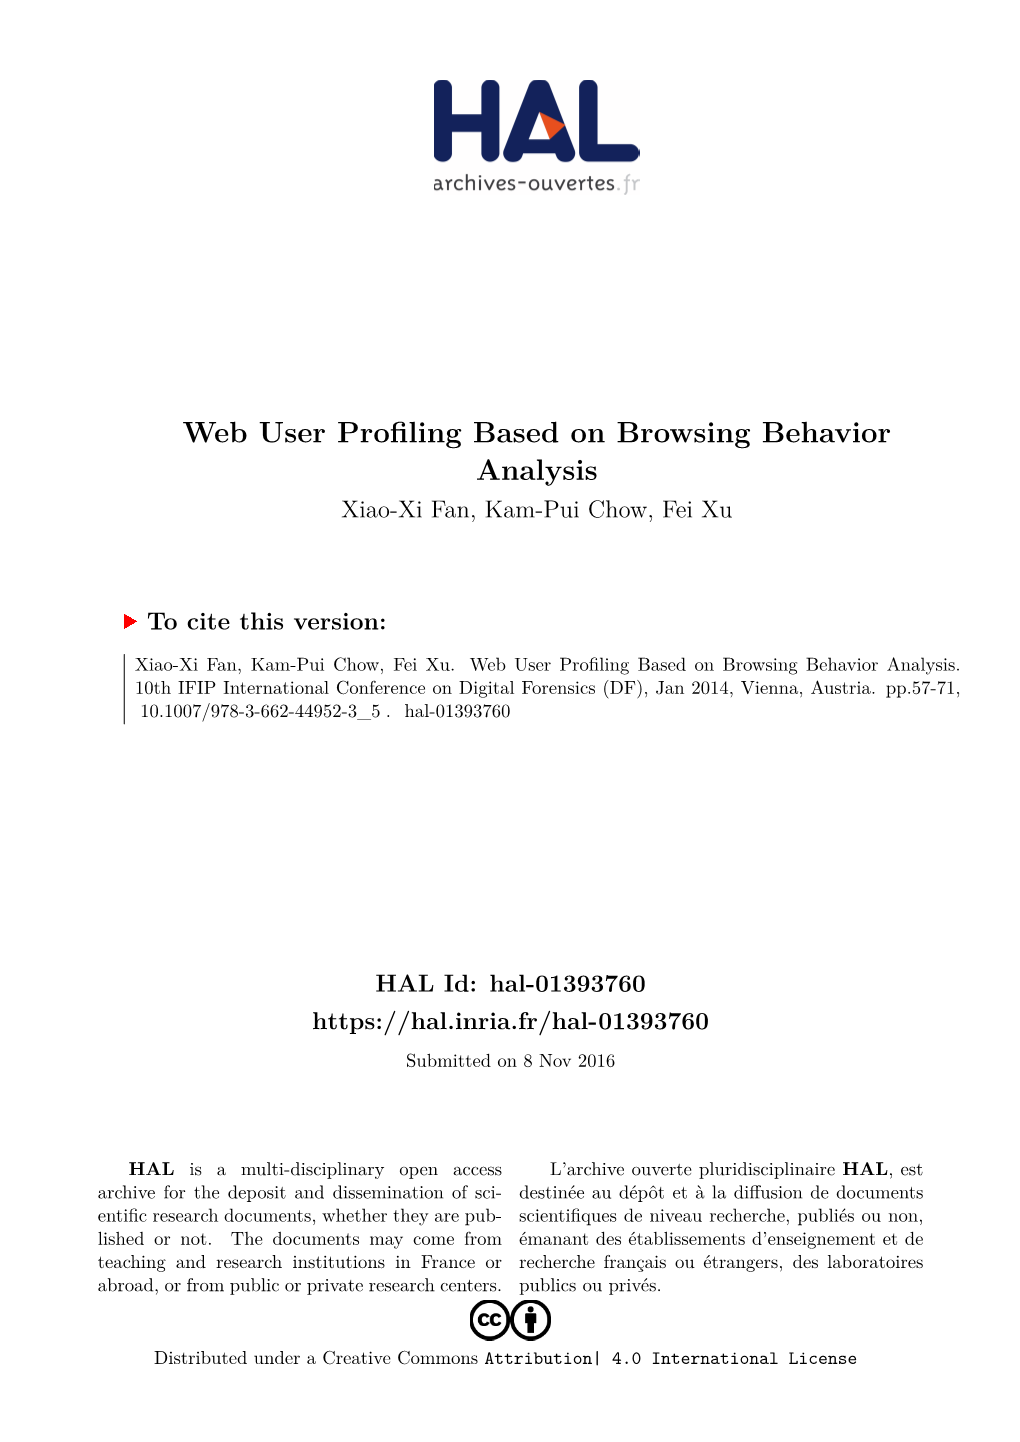 Web User Profiling Based on Browsing Behavior Analysis Xiao-Xi Fan, Kam-Pui Chow, Fei Xu